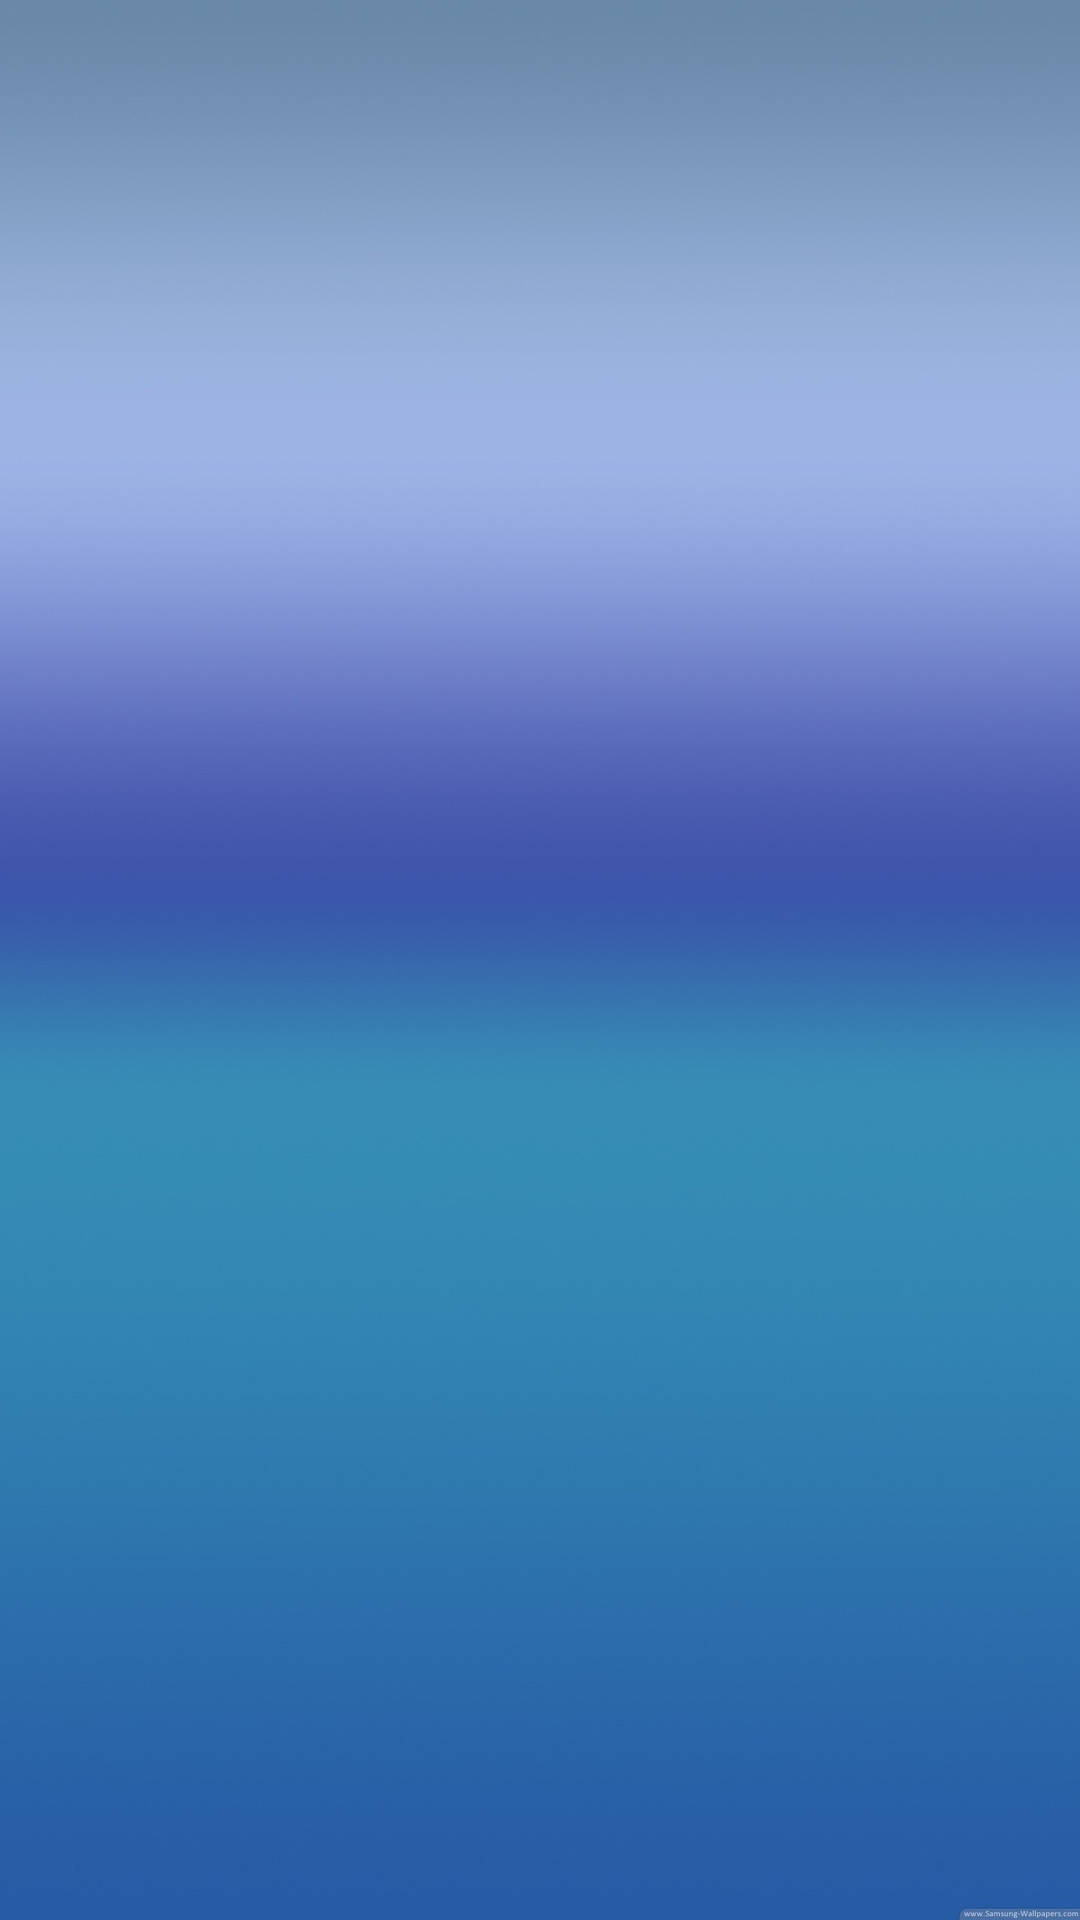 Google Pixel 3 Blue Gradient Wallpaper